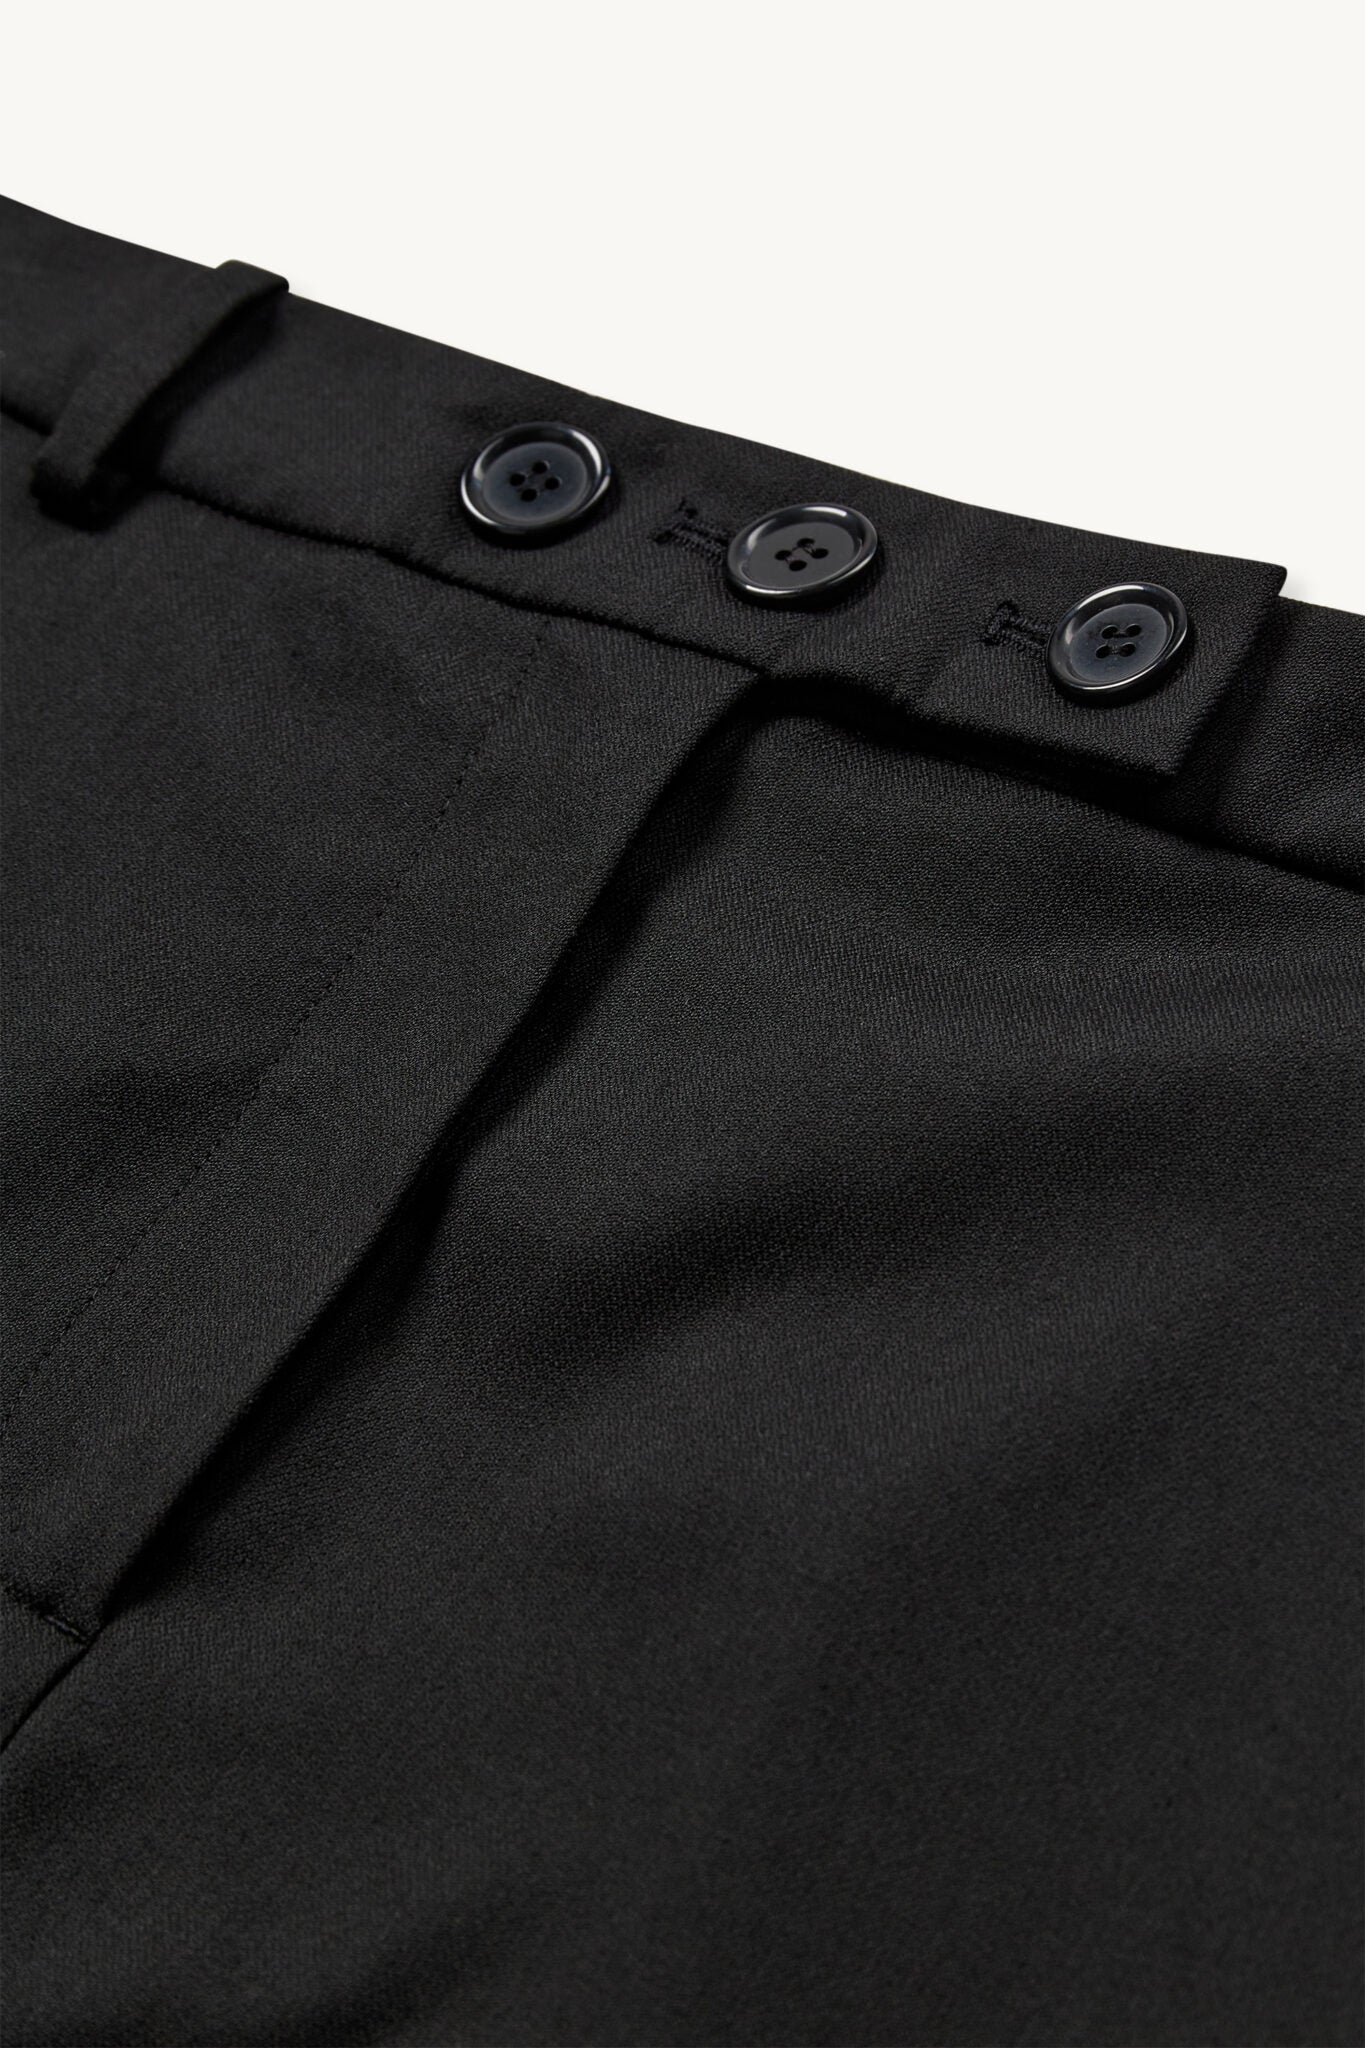 The Garment Pluto Skirt